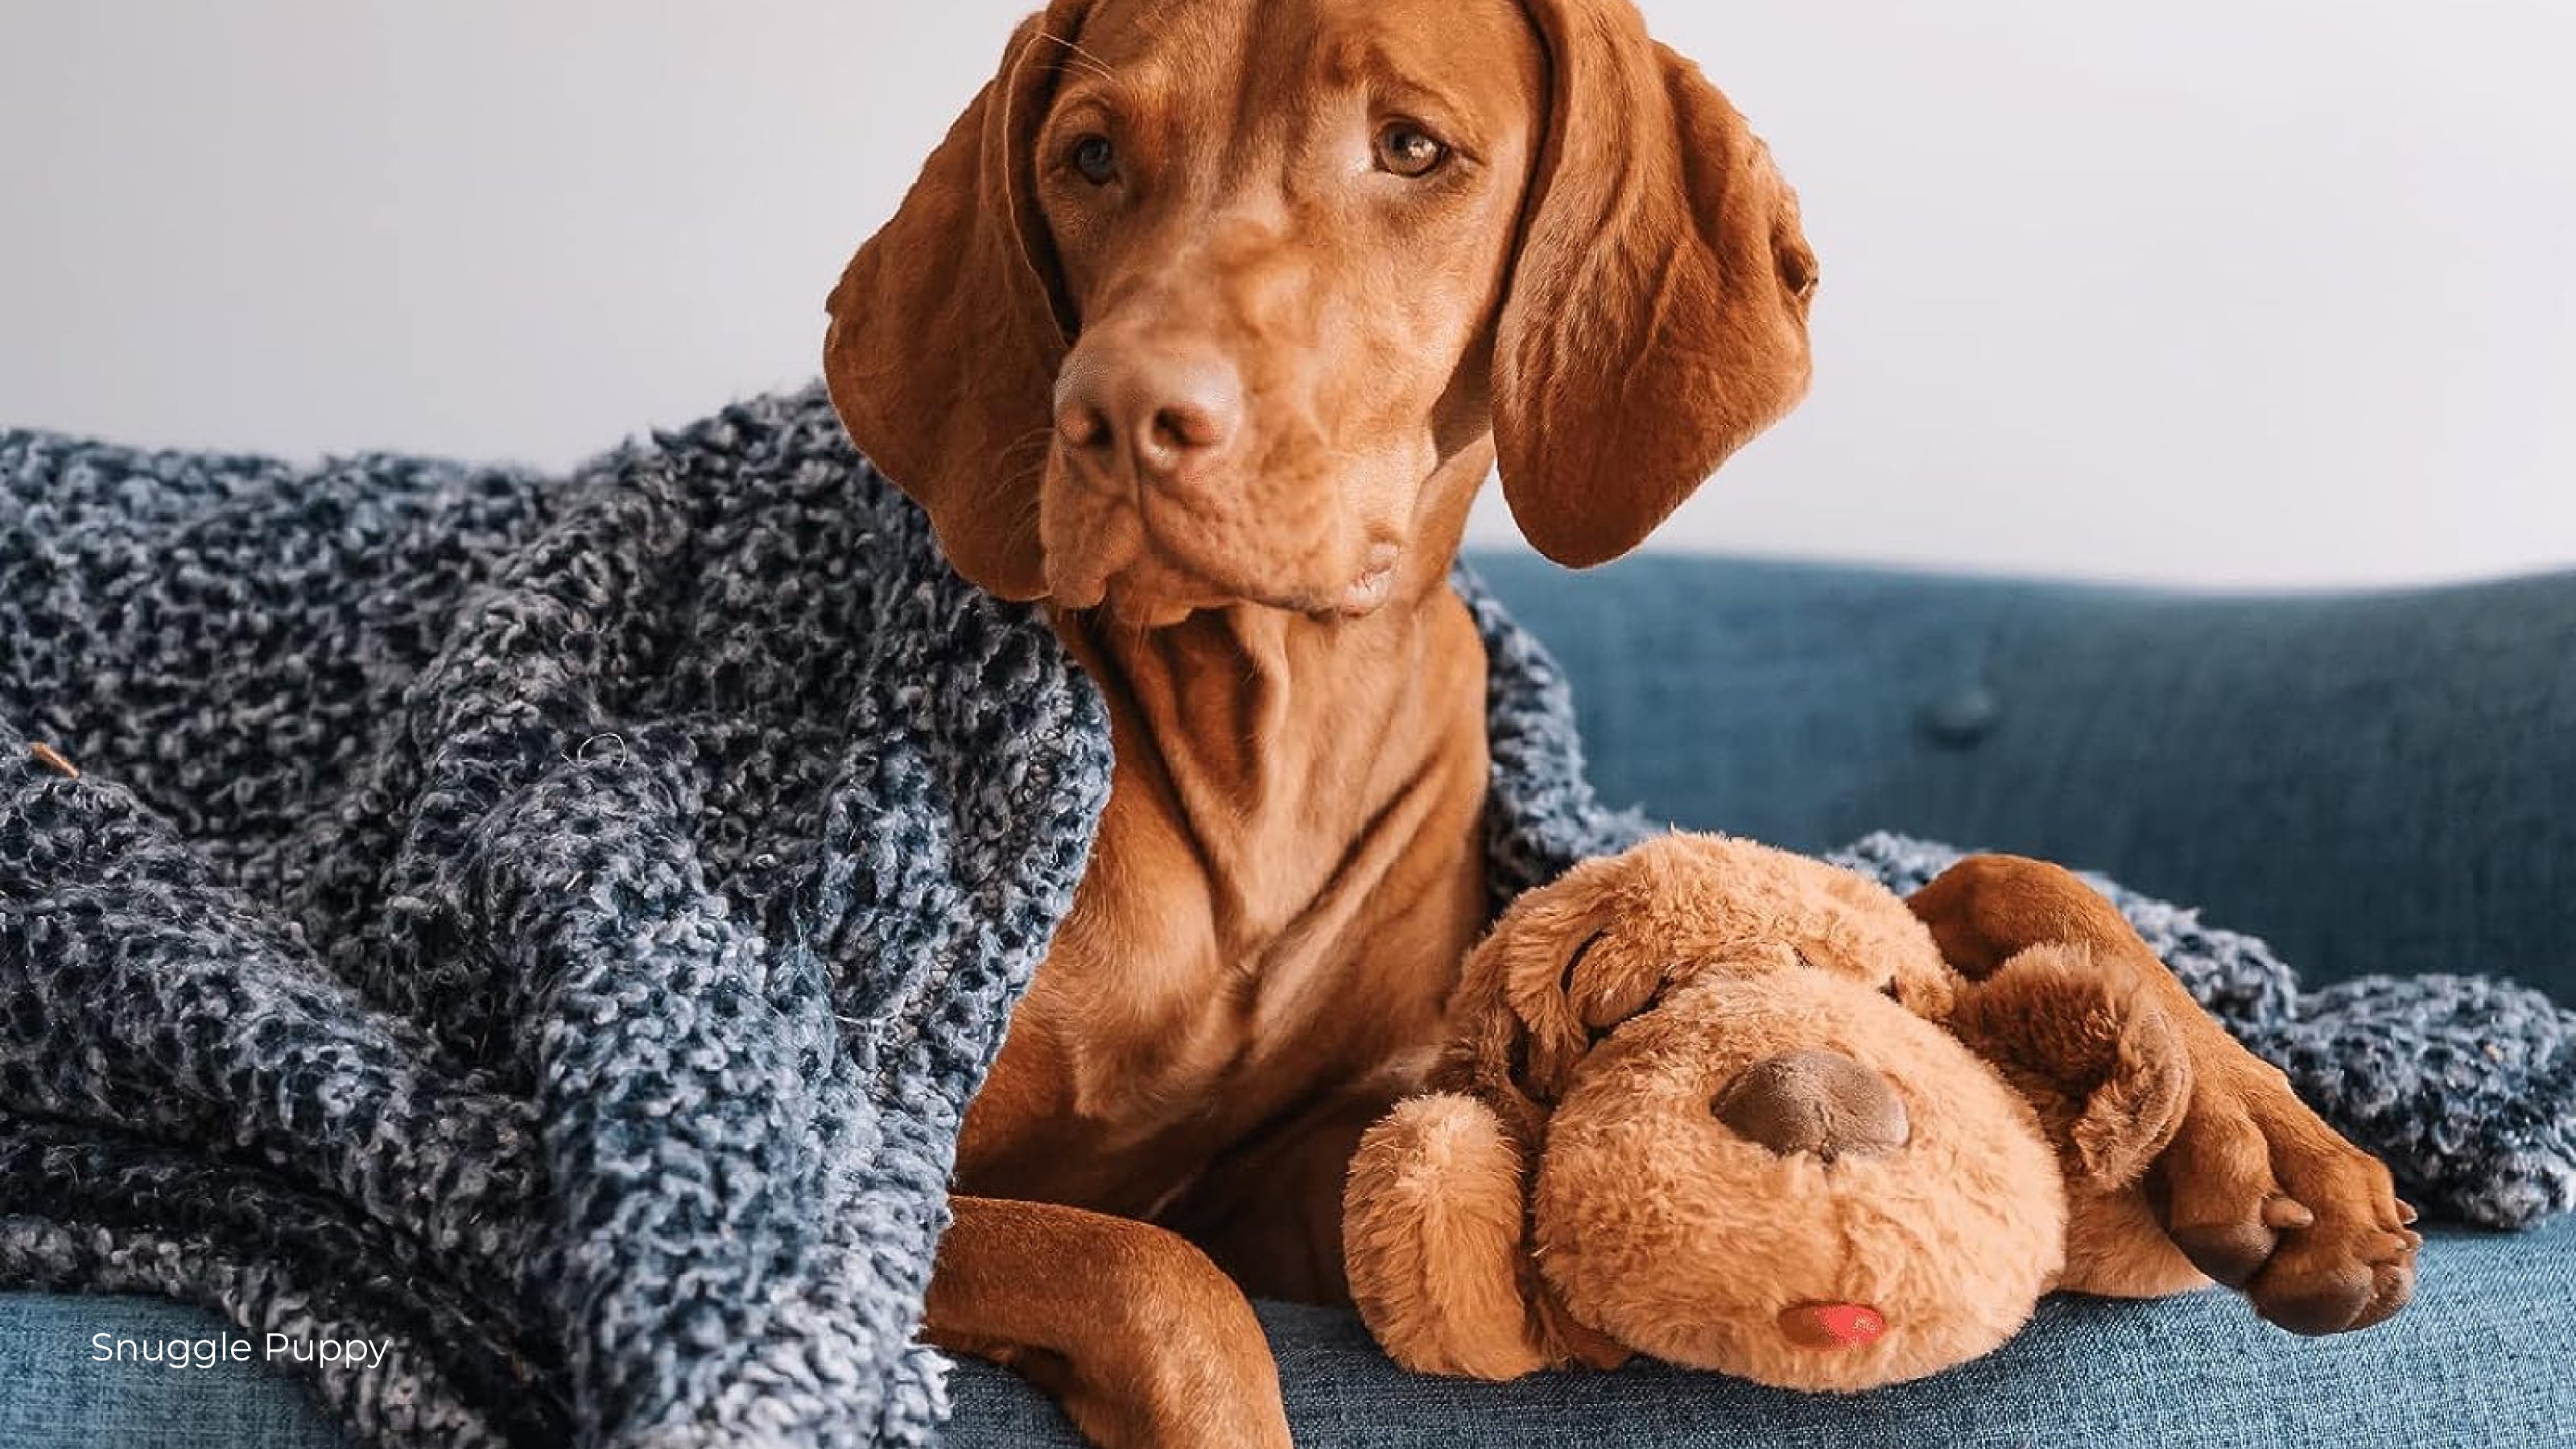 A Vizsla dog hugs a plush Snuggle Puppy dog toy on a blue sofa